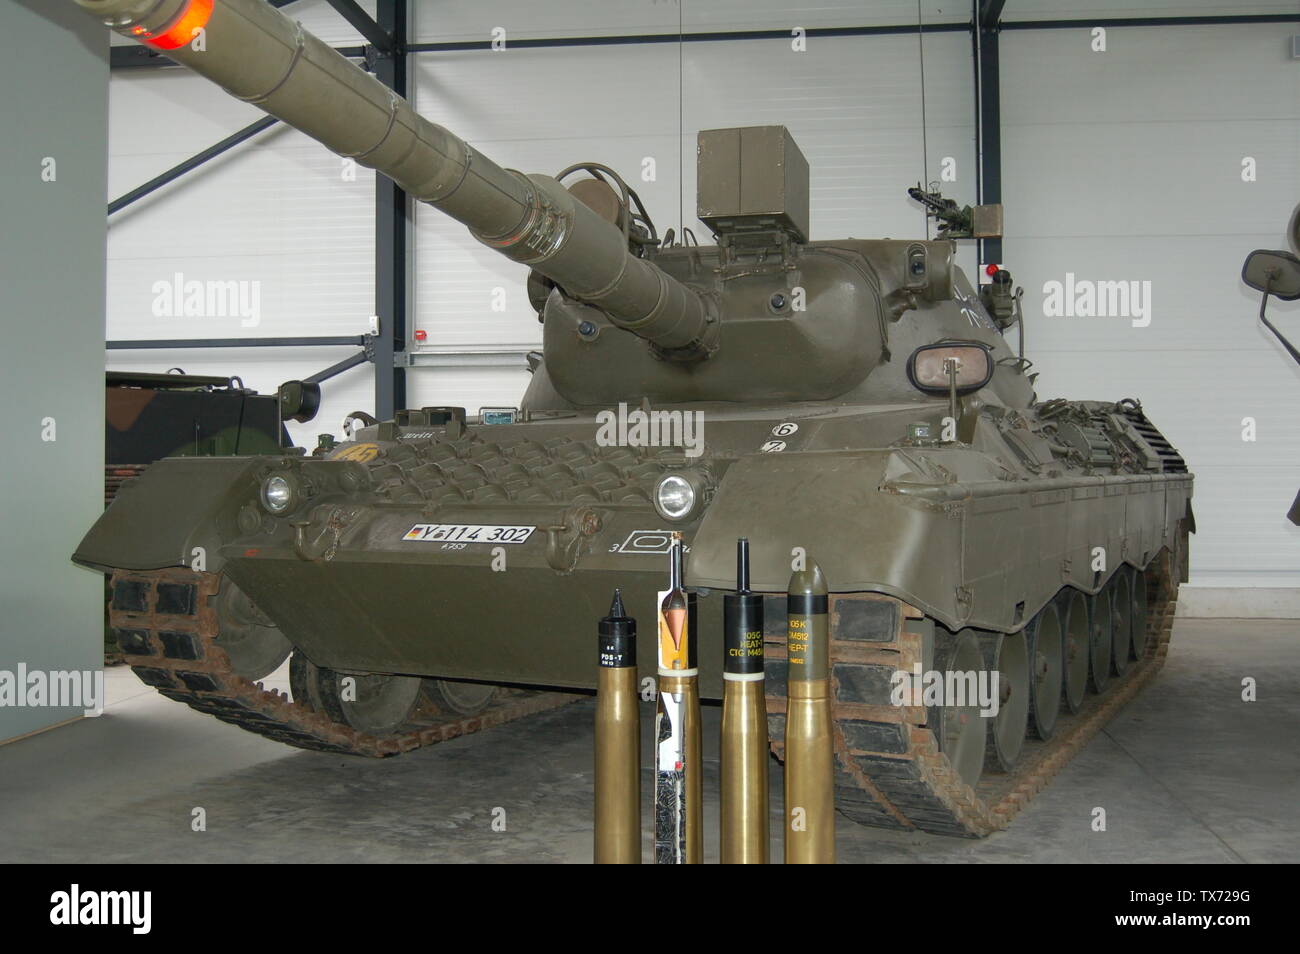 Mittlerer Kampfpanzer Leopard I A2 A1 Besatzung: 4 Soldaten Gewicht: 42,4  Tonnen Motorleistung: 610 kW (830 PS) Bewaffnung: 1 Bordkanone 105 mm L/51,  Blenden U. Flieger-Abw-MG, Kaliber: 7,62 mm x 51 Besonderheiten: